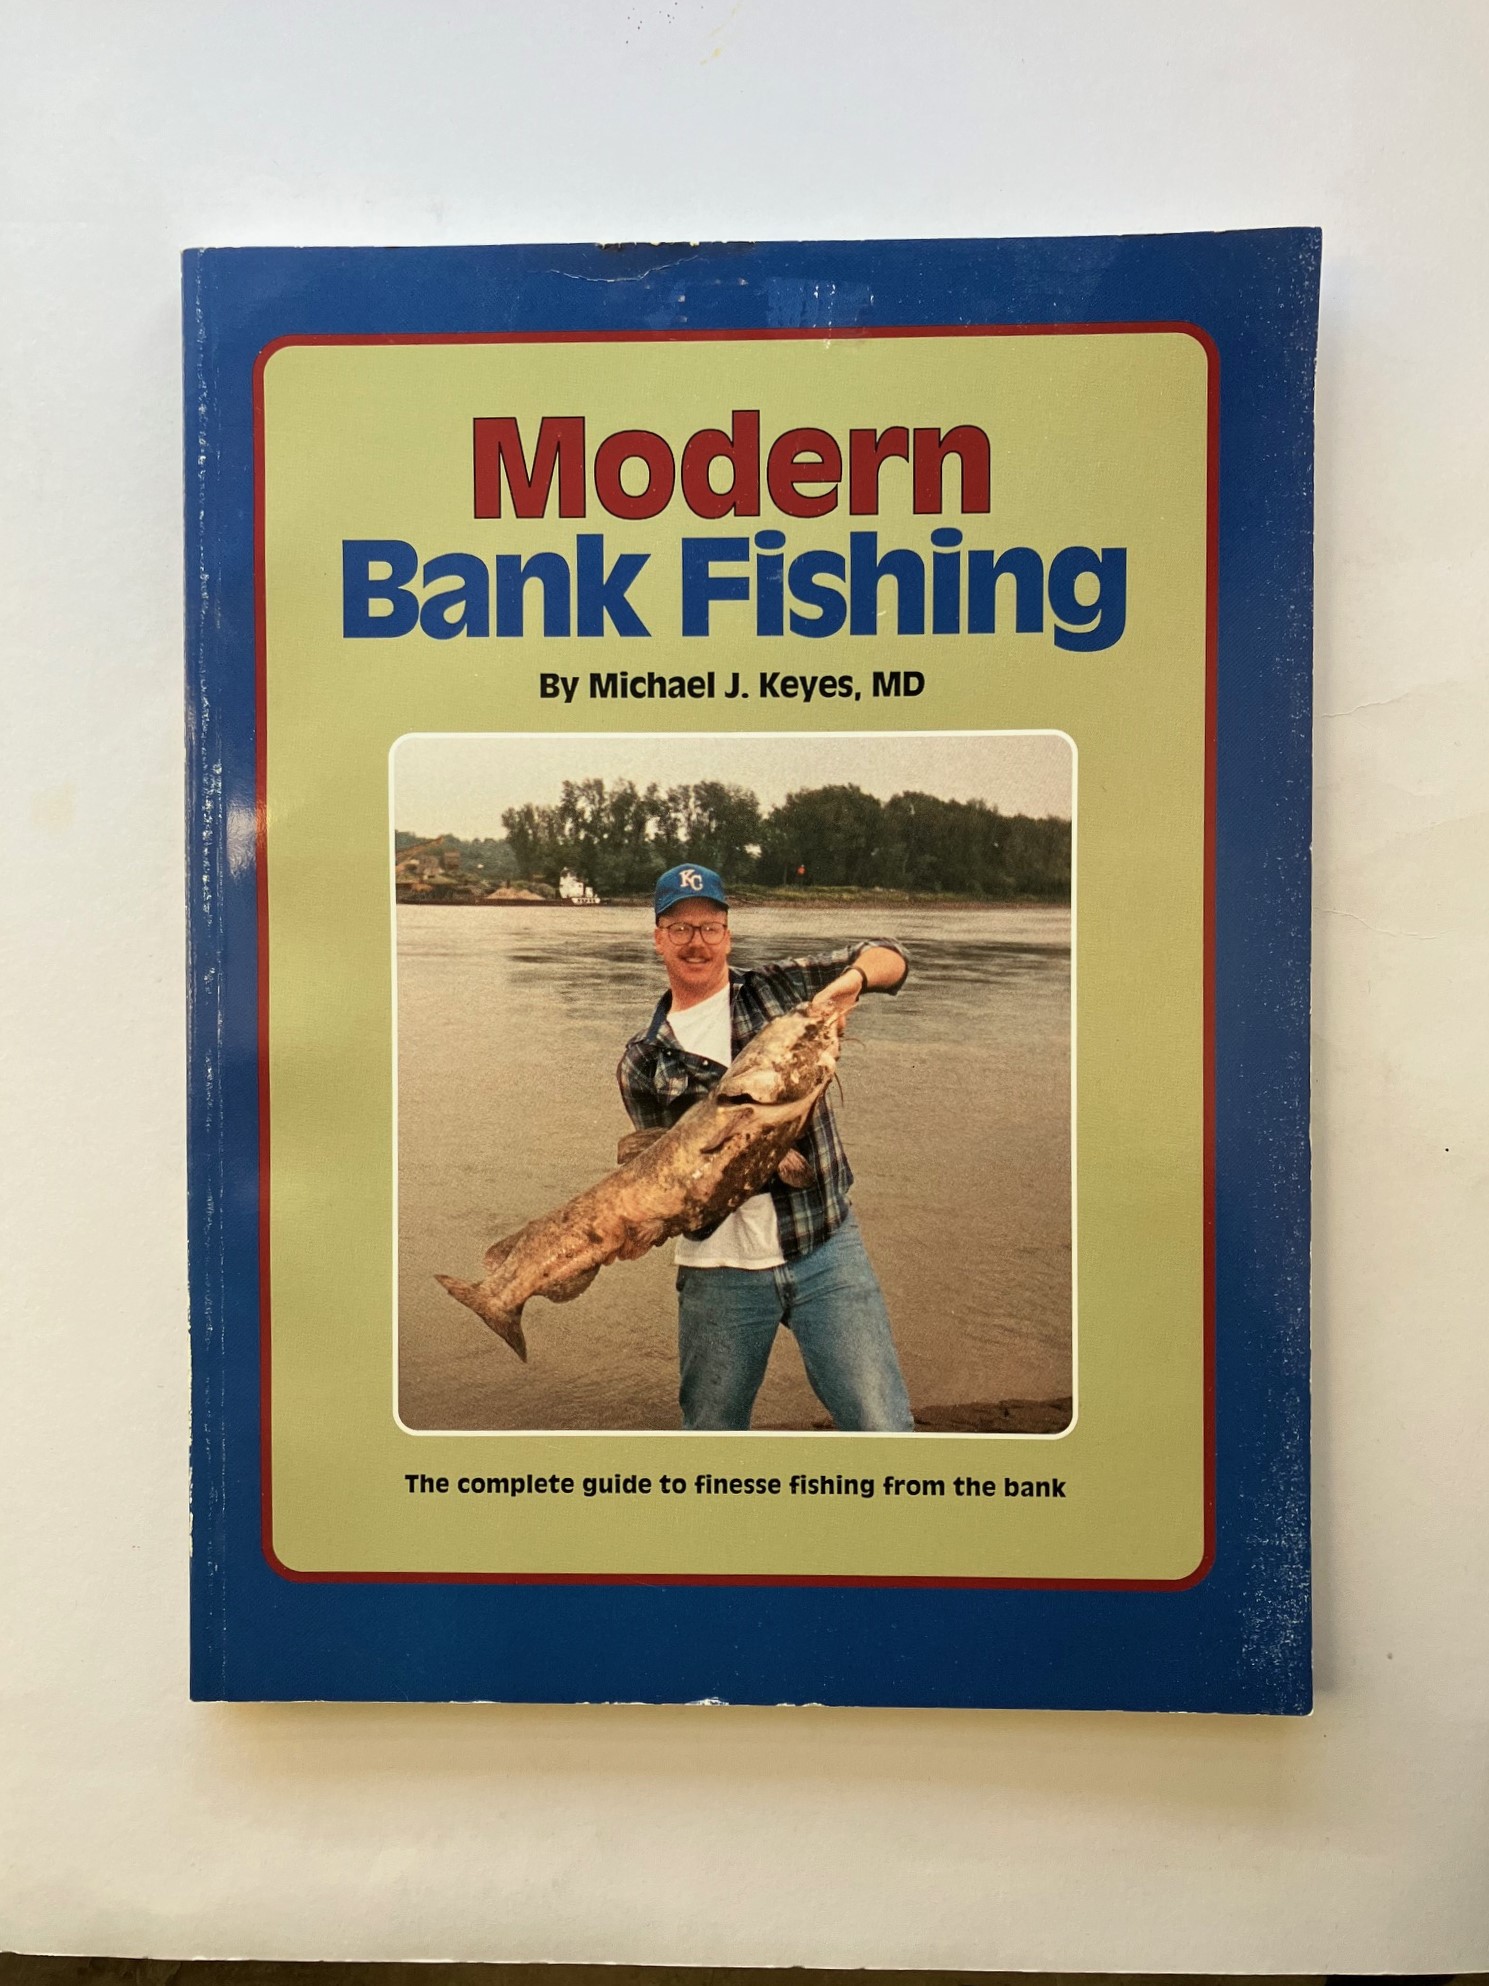 Modern Bank Fishing